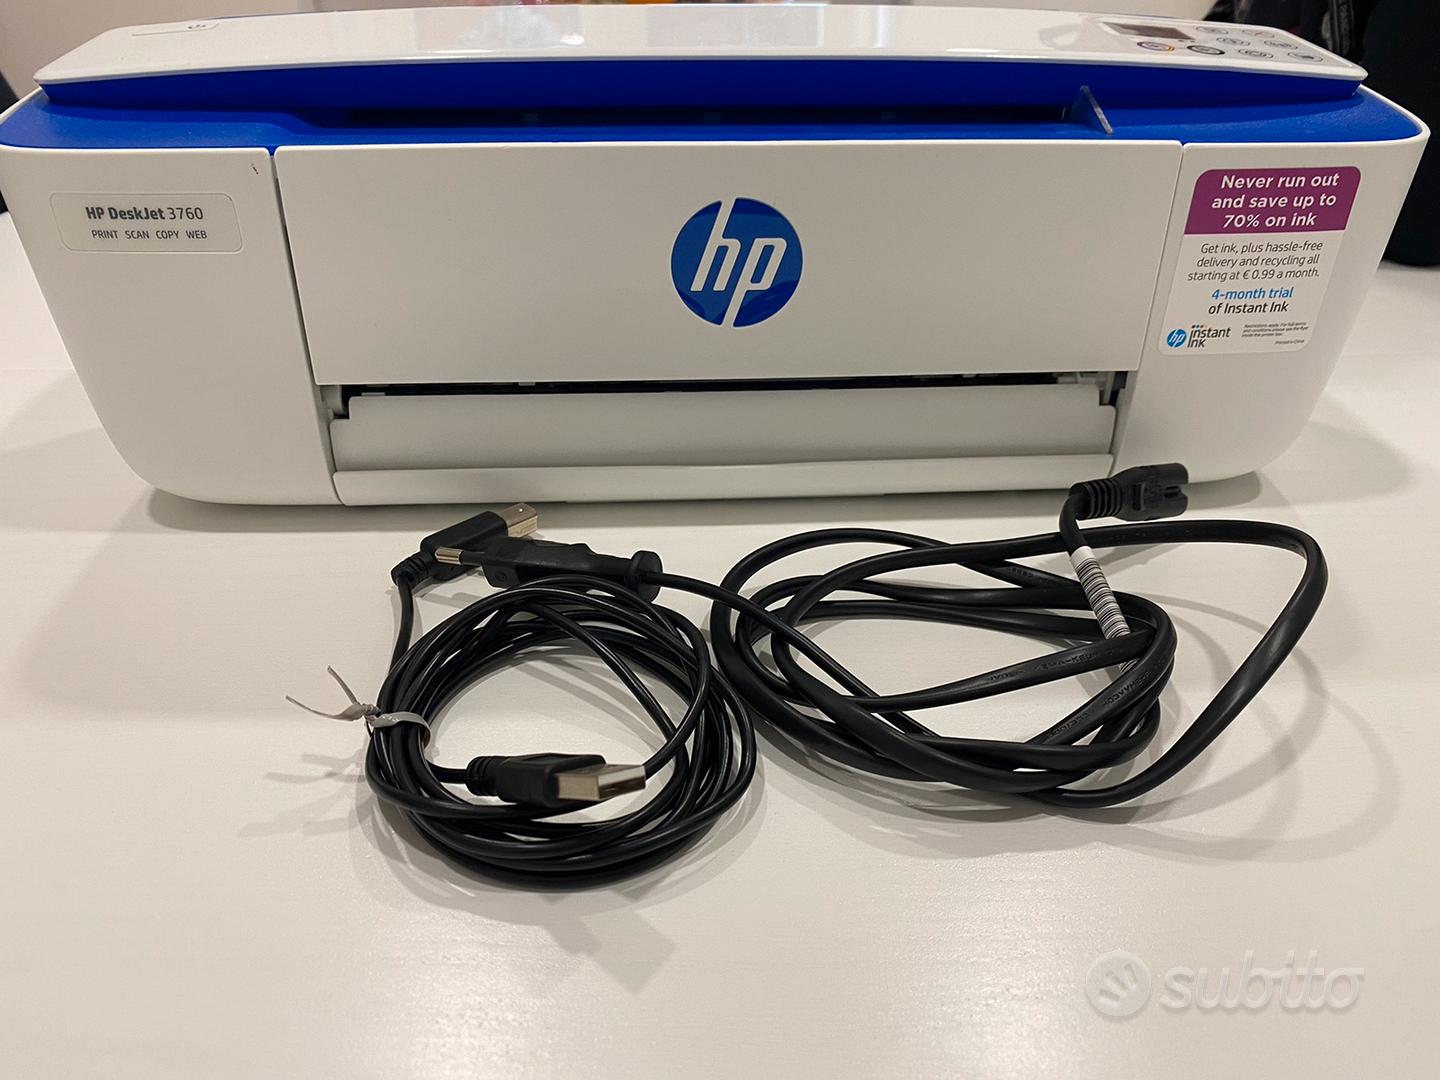 Stampante hp deskjet 3760 - Informatica In vendita a Latina